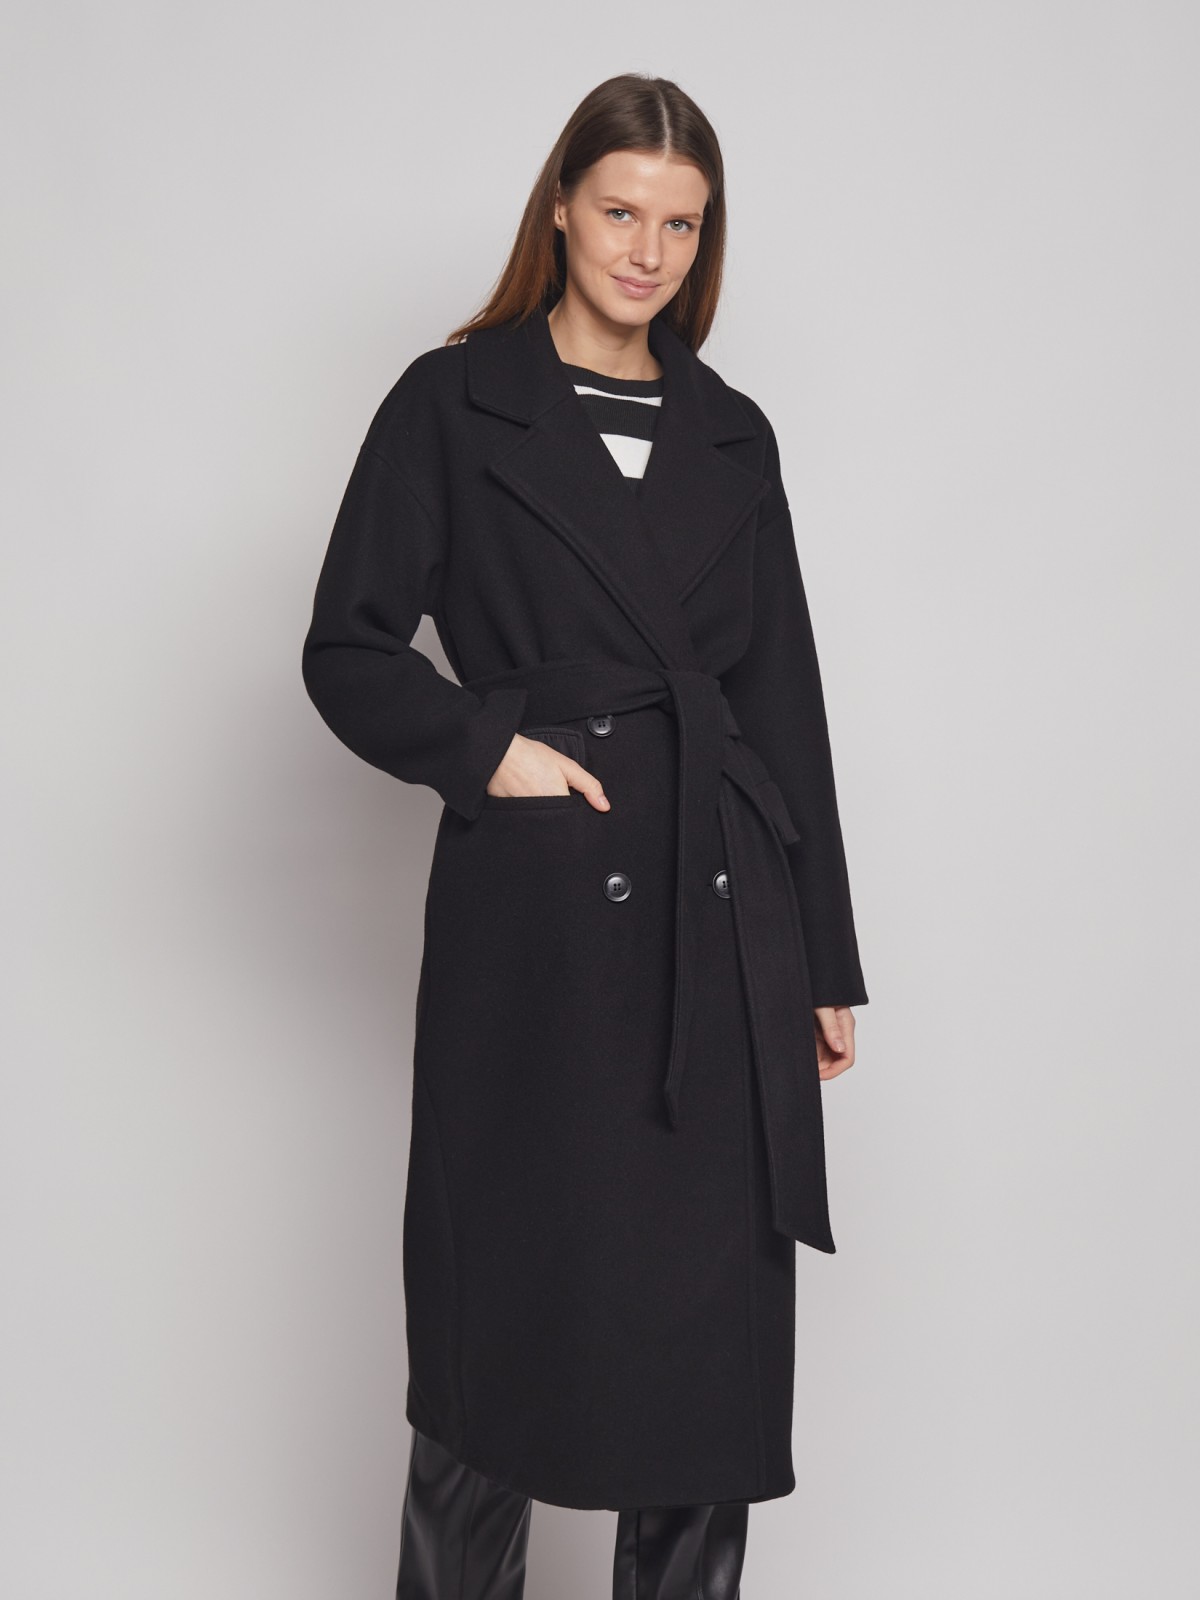 Двубортное пальто с поясом zolla 023125857054, цвет черный, размер XS